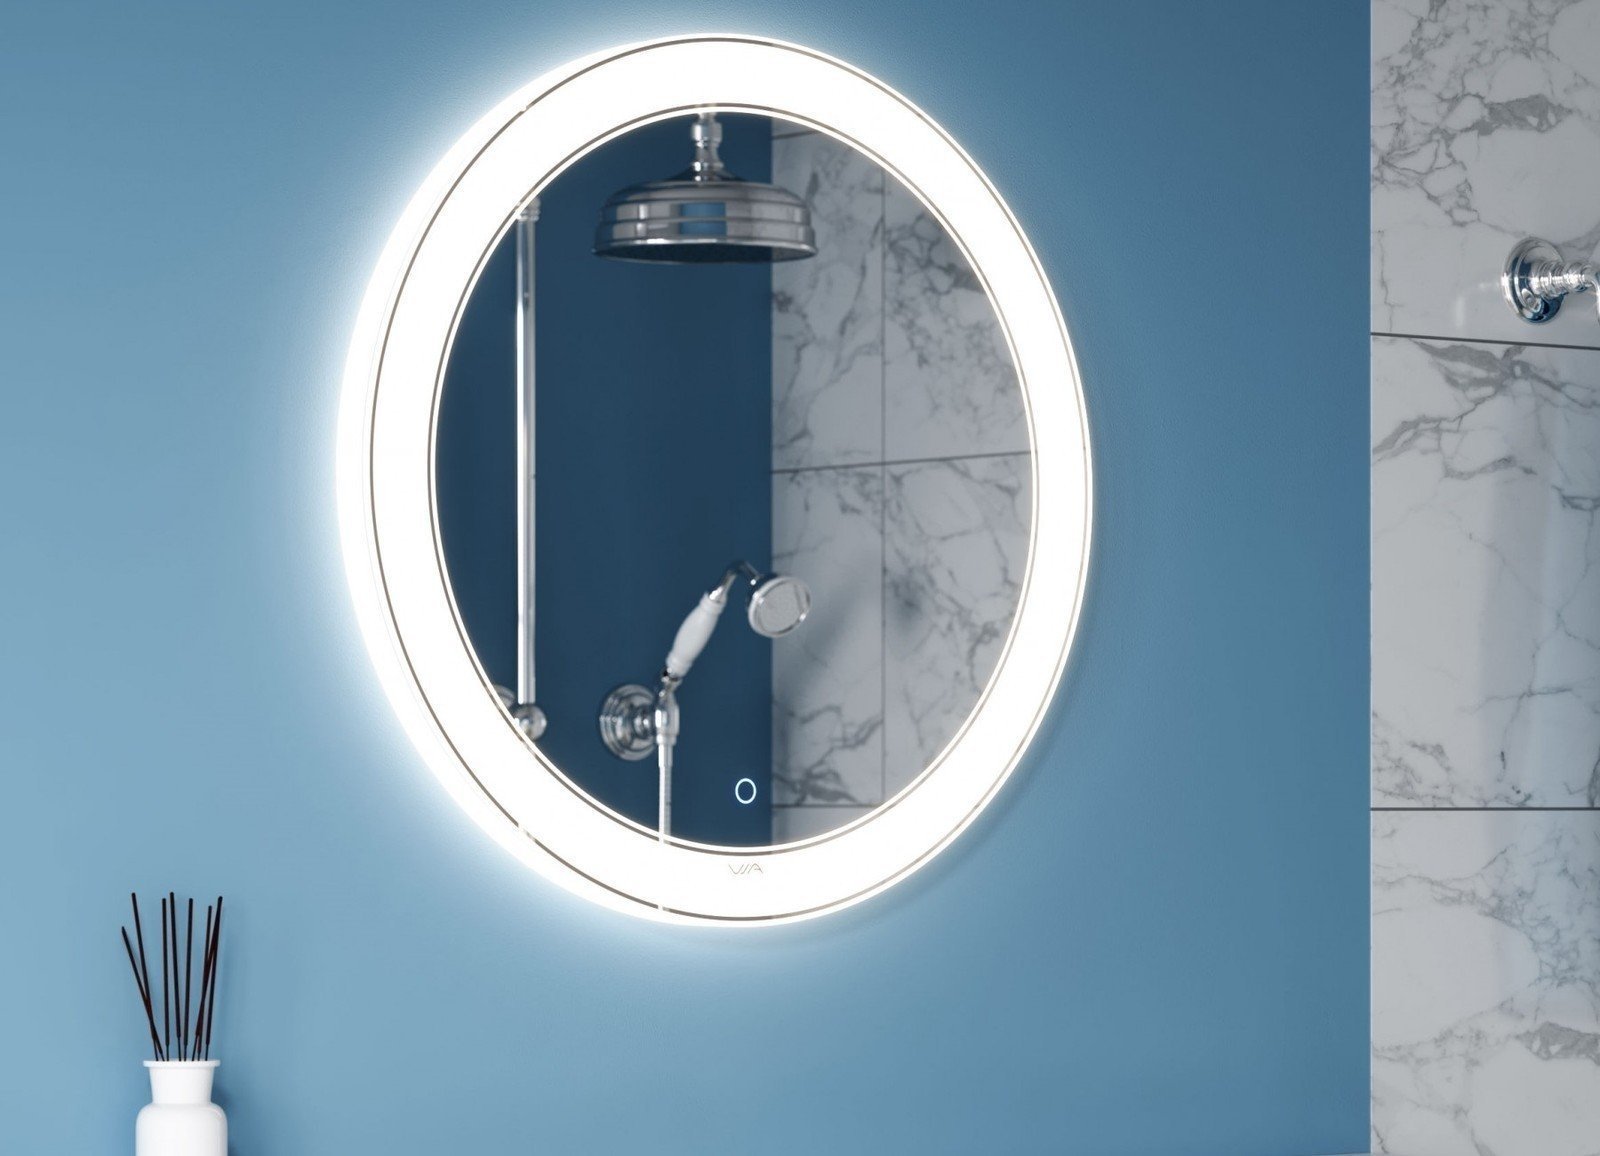 Круглое зеркало с подсветкой в ванную